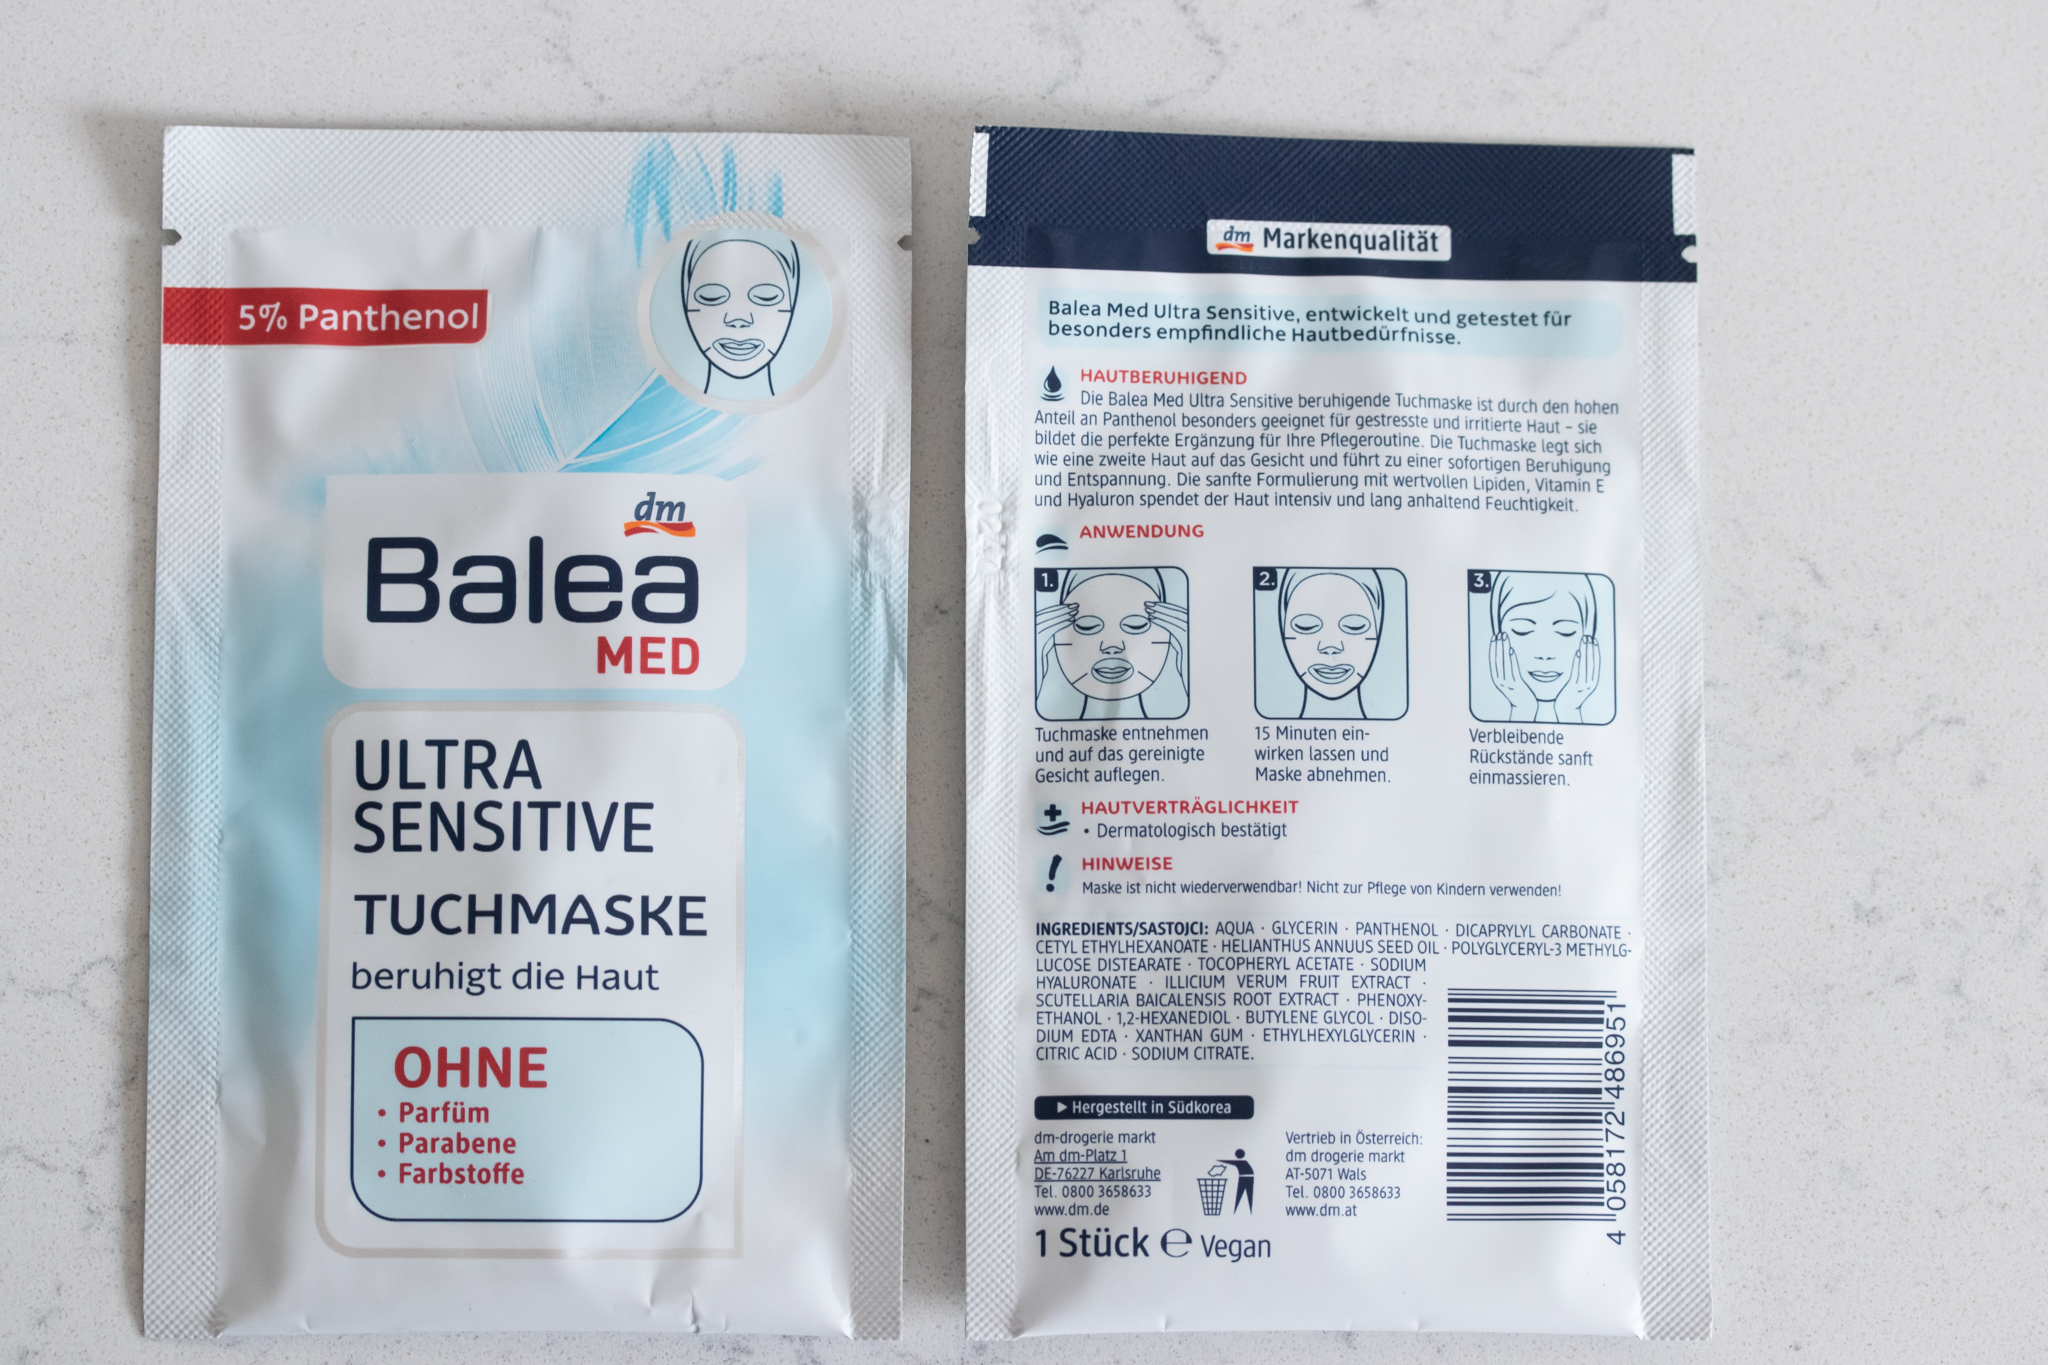 Ausprobiert Balea Med Ultra Sensitive Tuchmaske Innenaussen